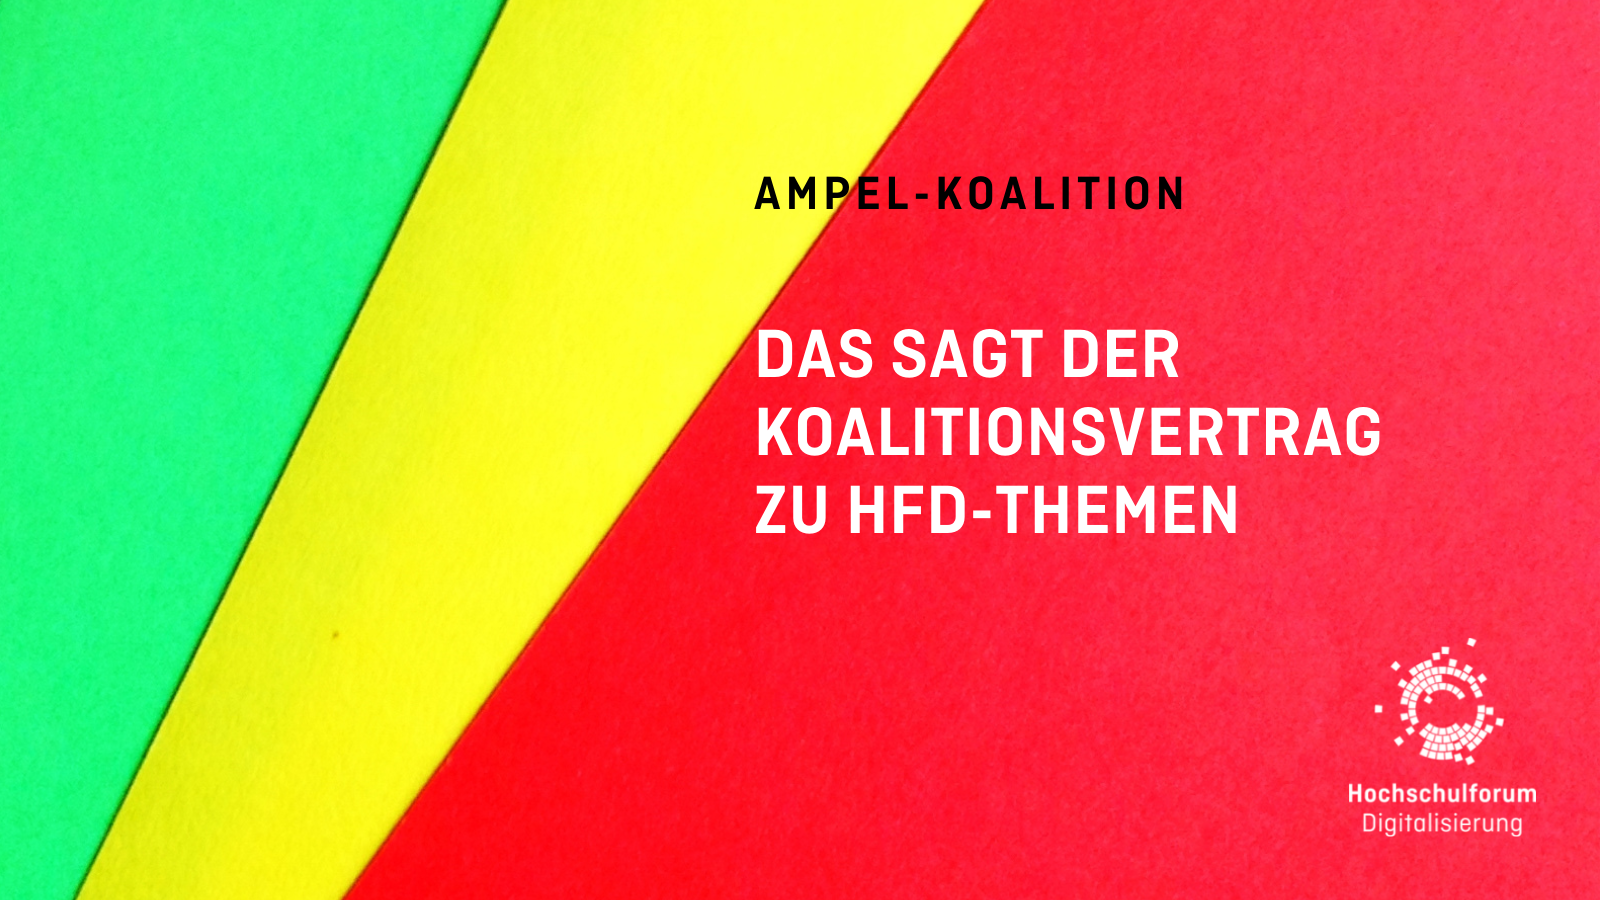 rote, grüne und gelbe Farbfelder fächerartig übereinander gelegt. Text. Ampel-Koalition. Das das der Koalitionsvertrag zu HFD-Themen